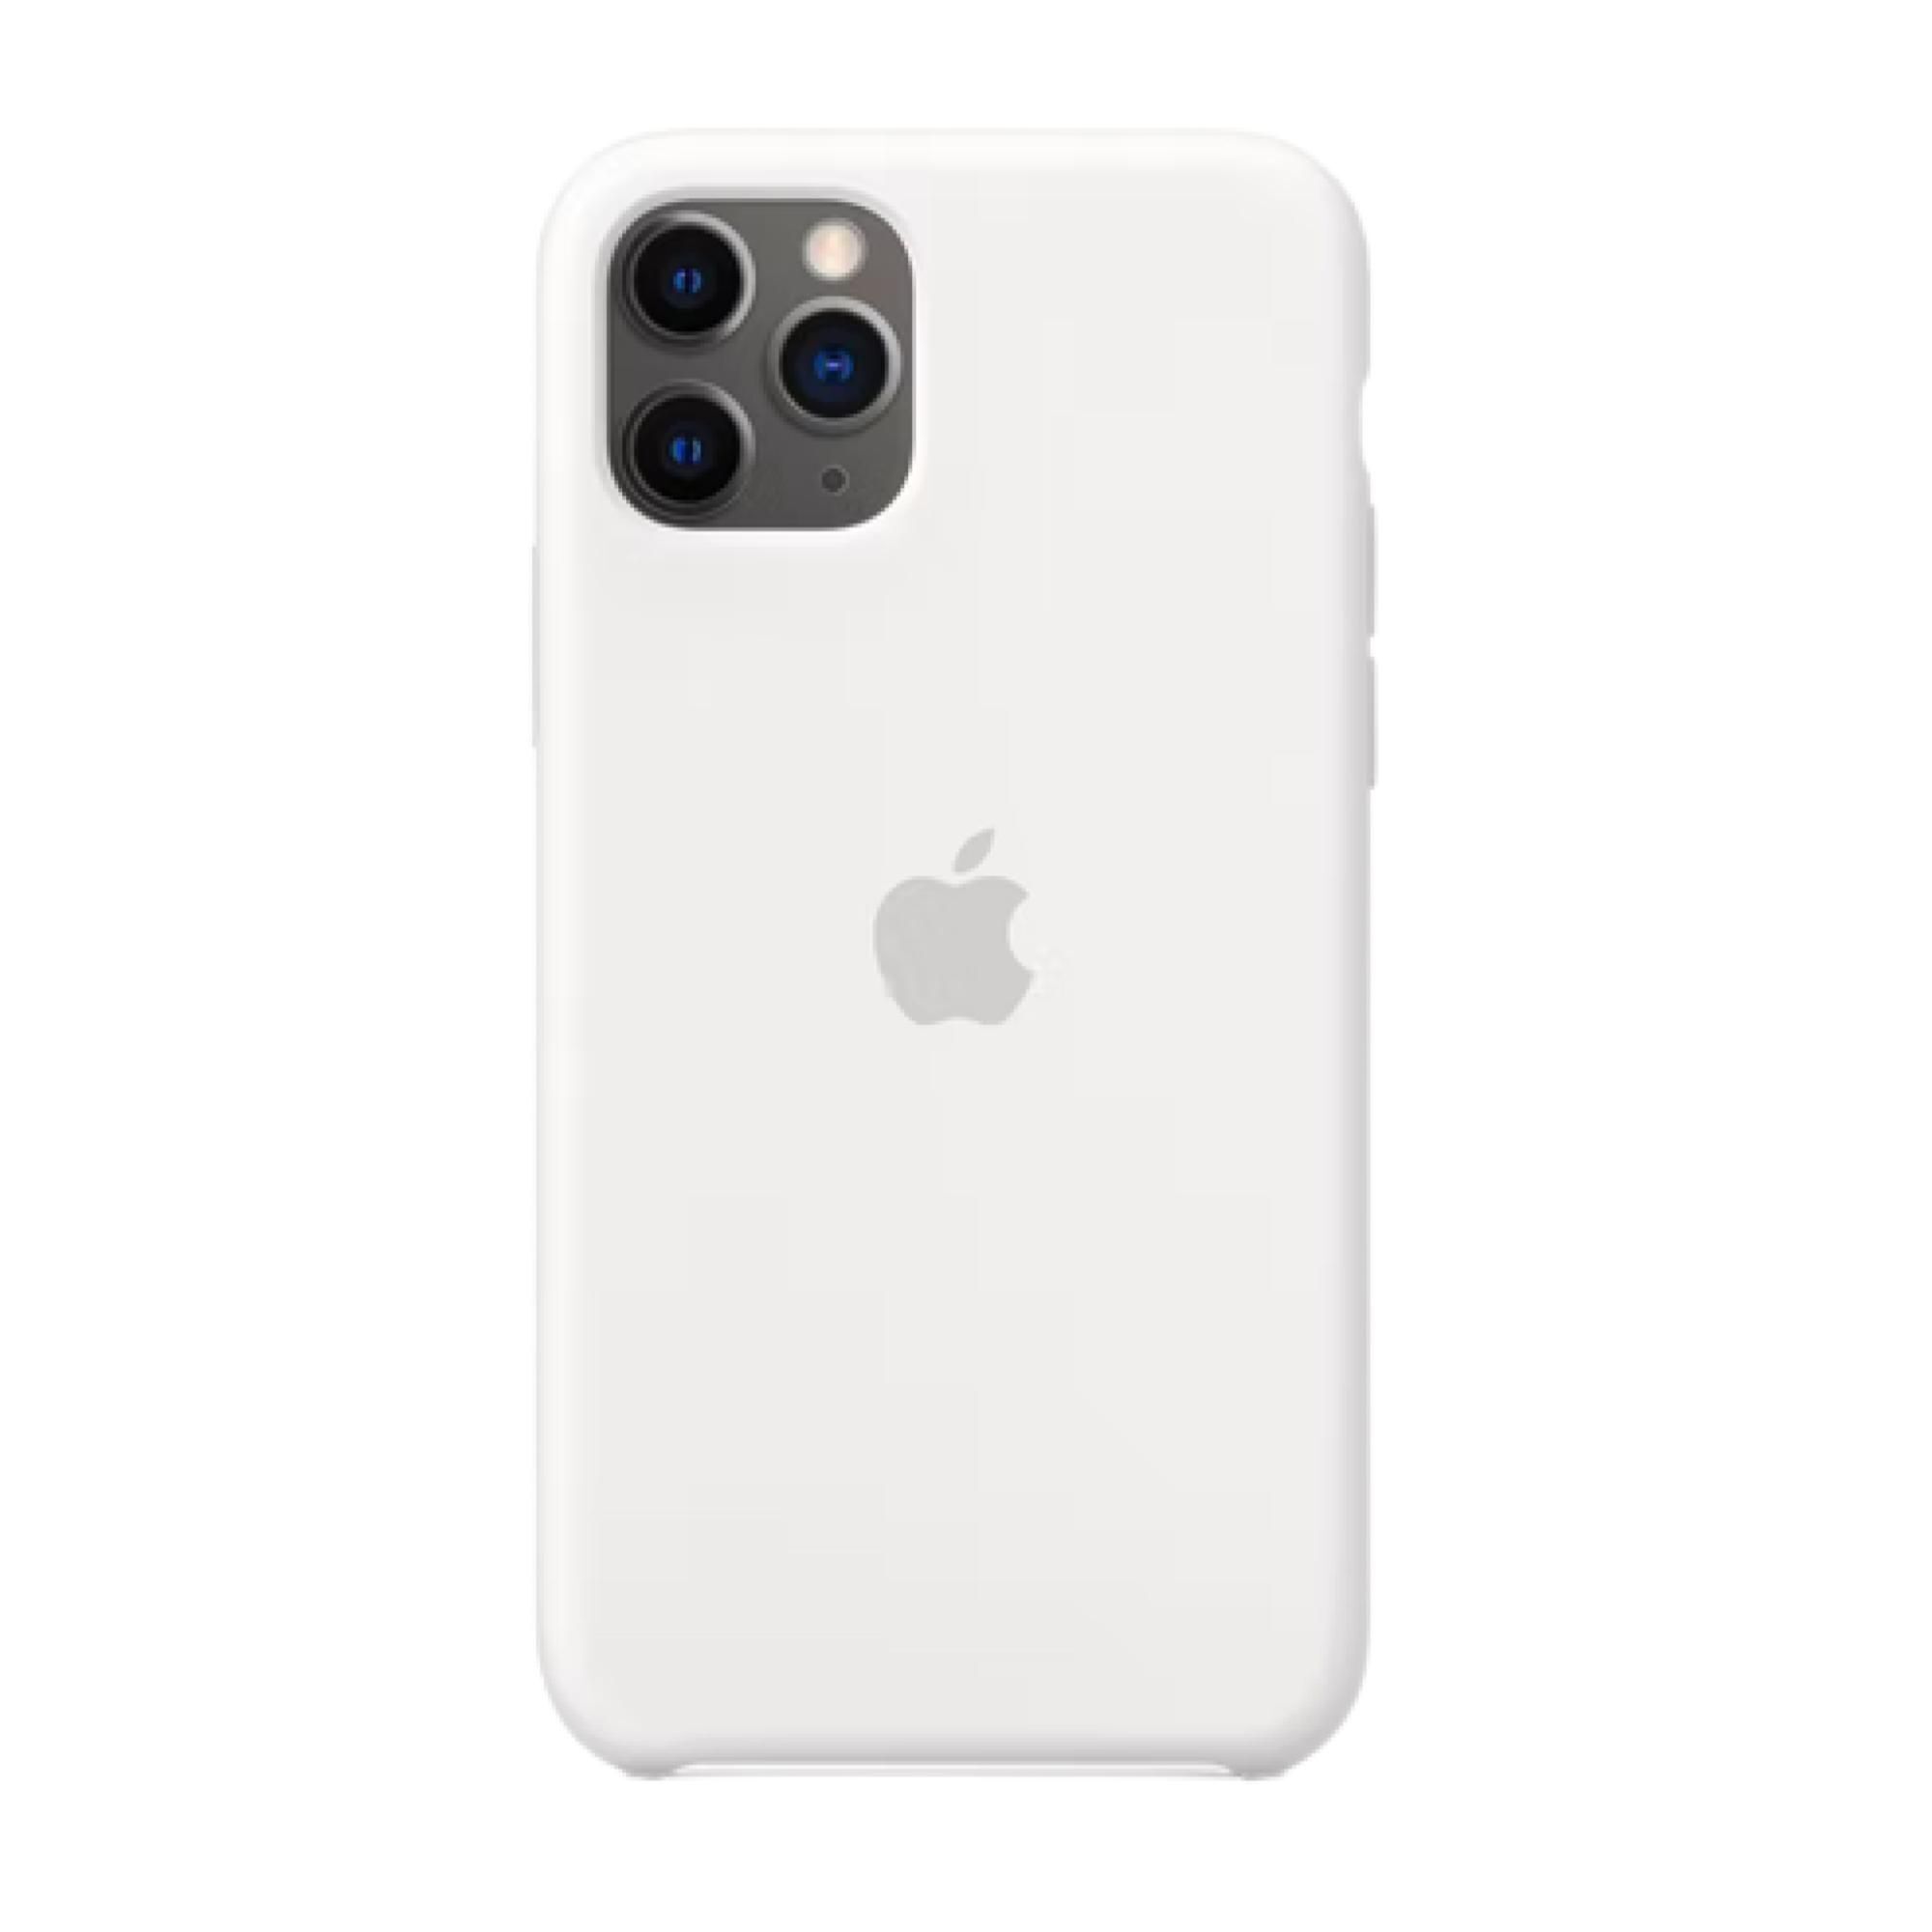 Carcasa iPhone 11 PRO 360°GKK - Inetshop